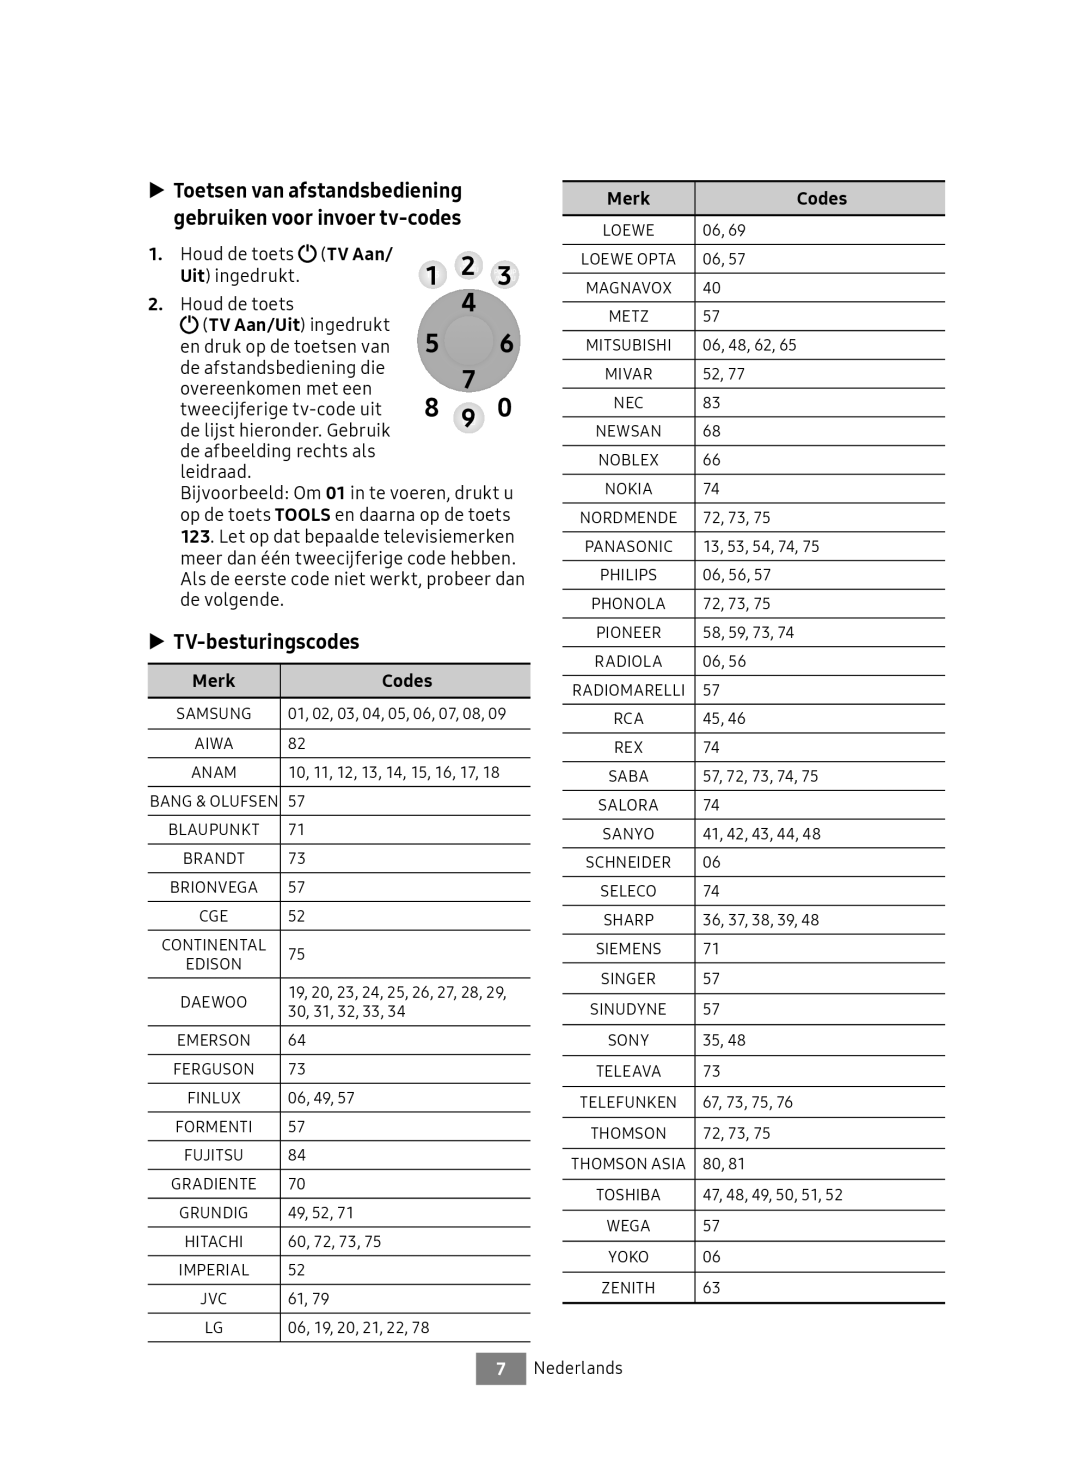 Samsung UBD-M7500/EN TV-besturingscodes, Houd de toets TV Aan, Uit ingedrukt, De lijst hieronder. Gebruik, Merk Codes 